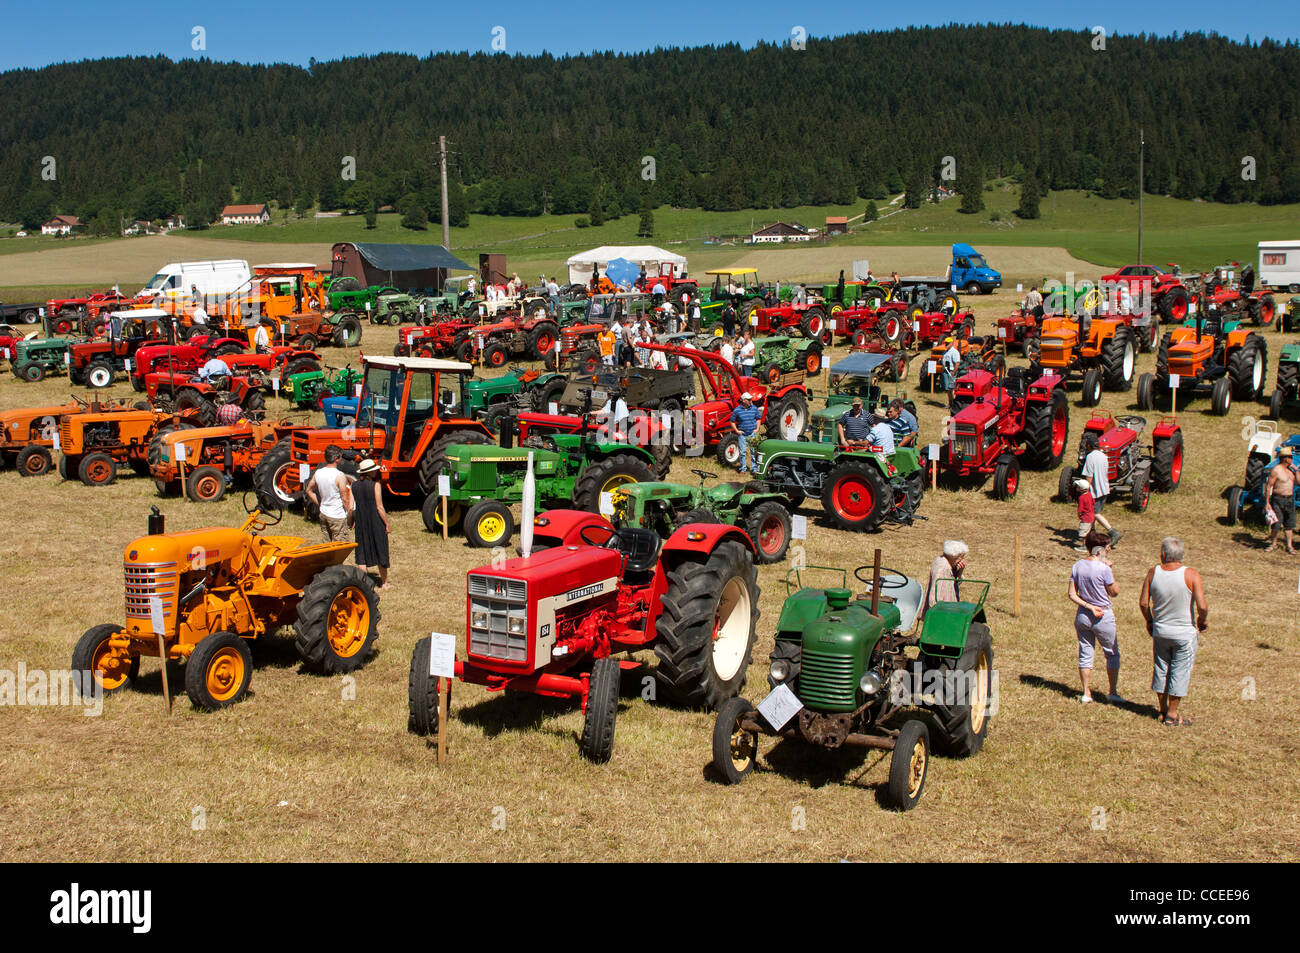 Exposition de tracteurs anciens et d'autres outils agricoles tractus Mania, La Brevine, Jura, Suisse Banque D'Images